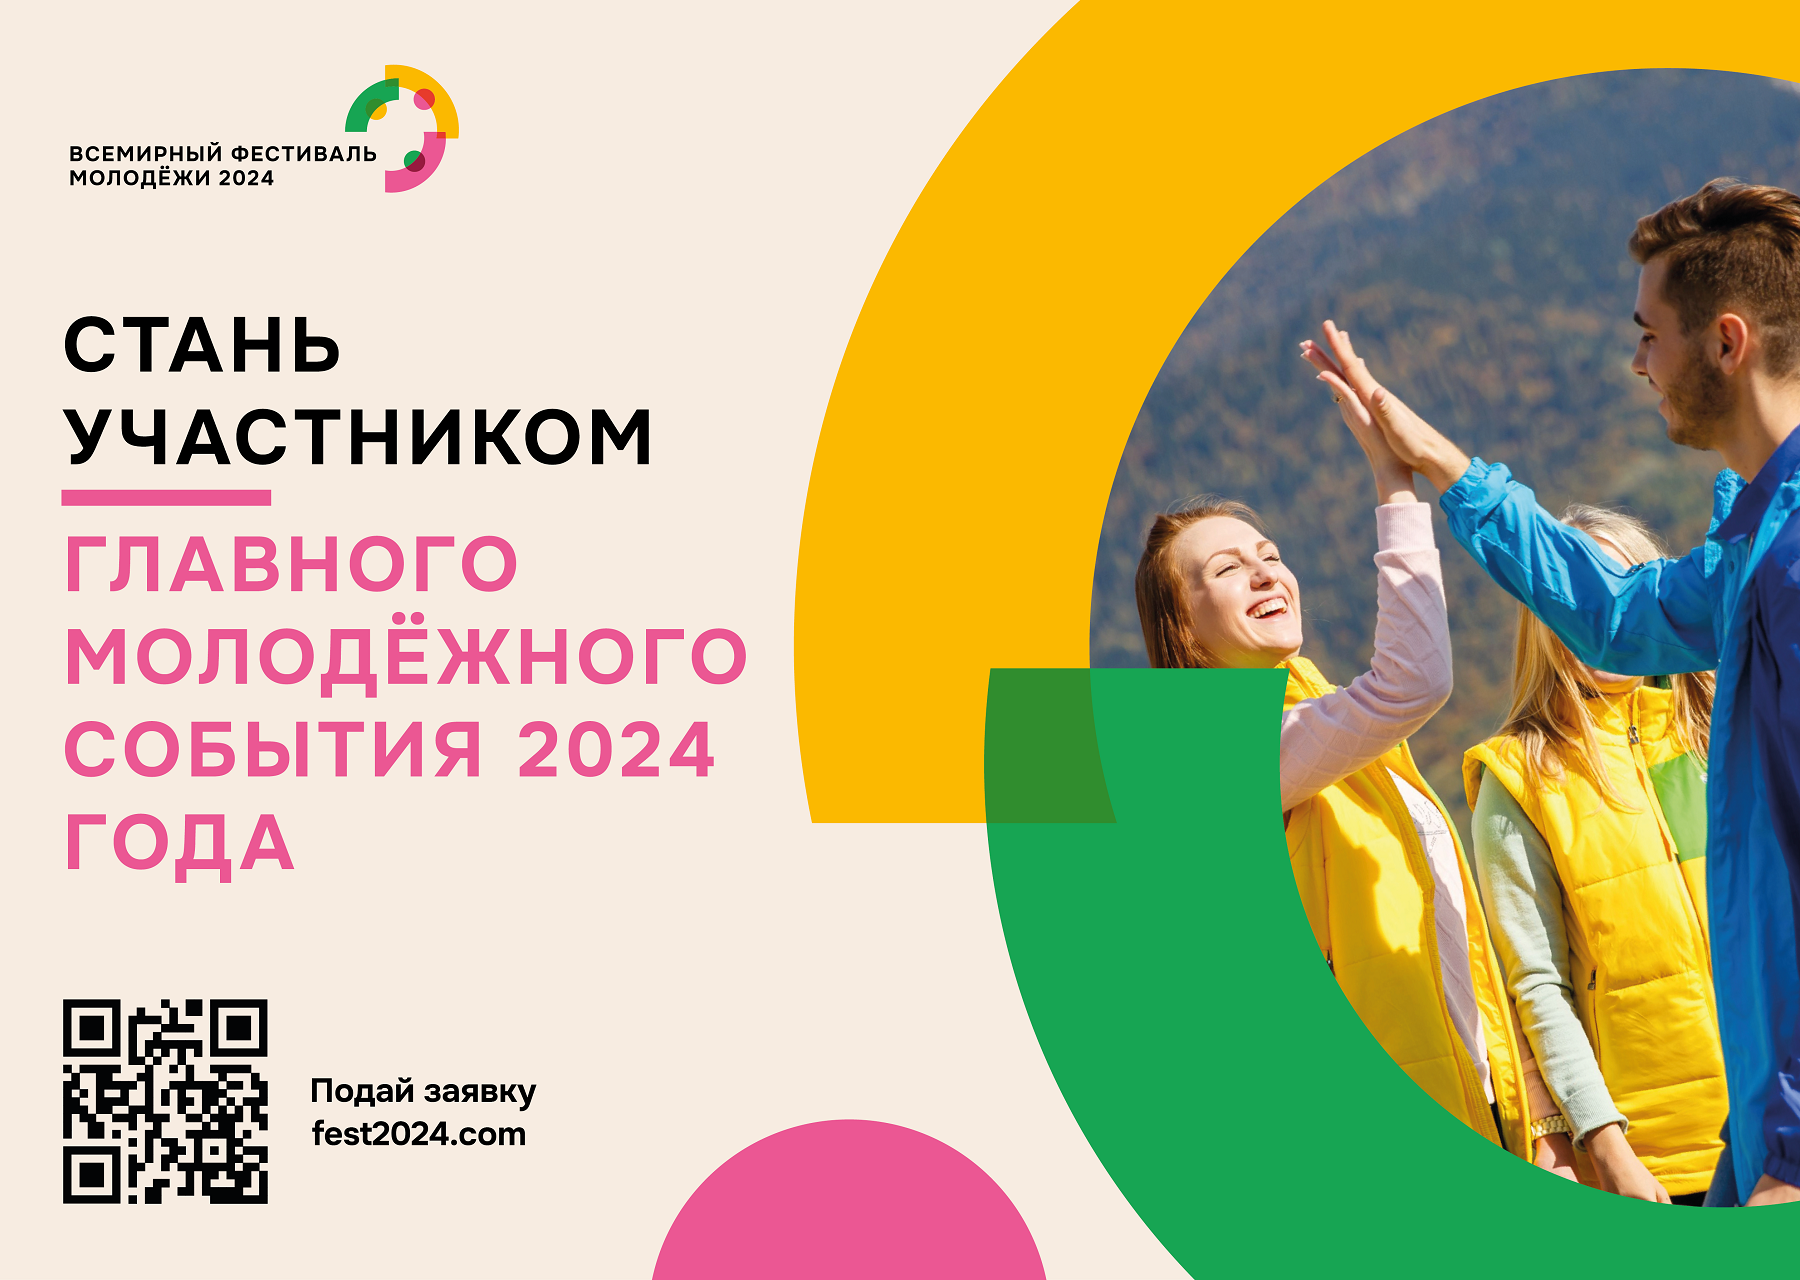 Всемирный фестиваль молодёжи 2024 в России. Всемирный молодежный фестиваль 2024 в Сочи. Всемирный фестиваль молодёжи в Сочи в 2024 году. Молодежный фестиваль Сириус 2024.